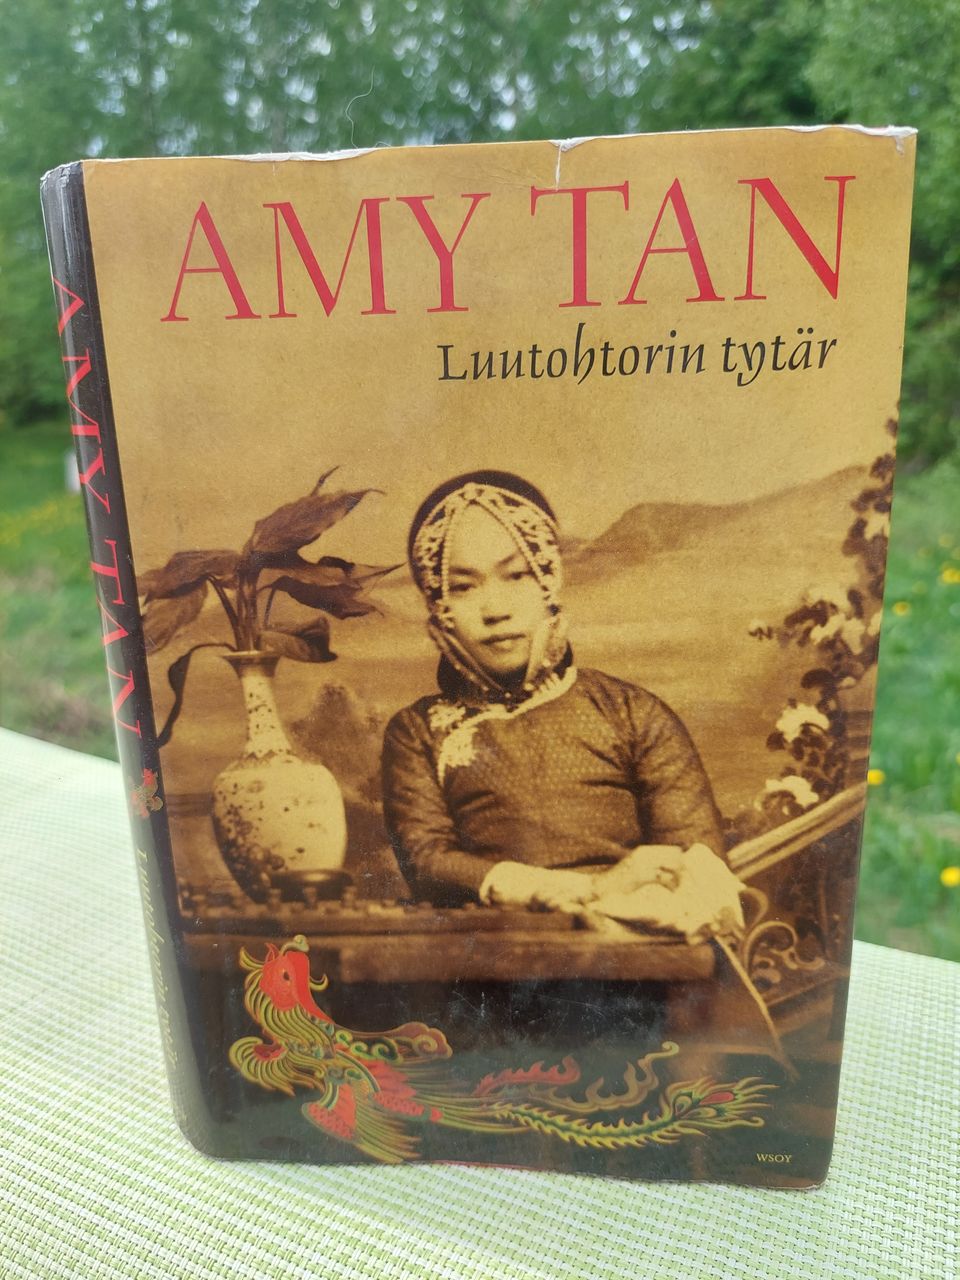 Amy Tan: Luutohtorin tytär